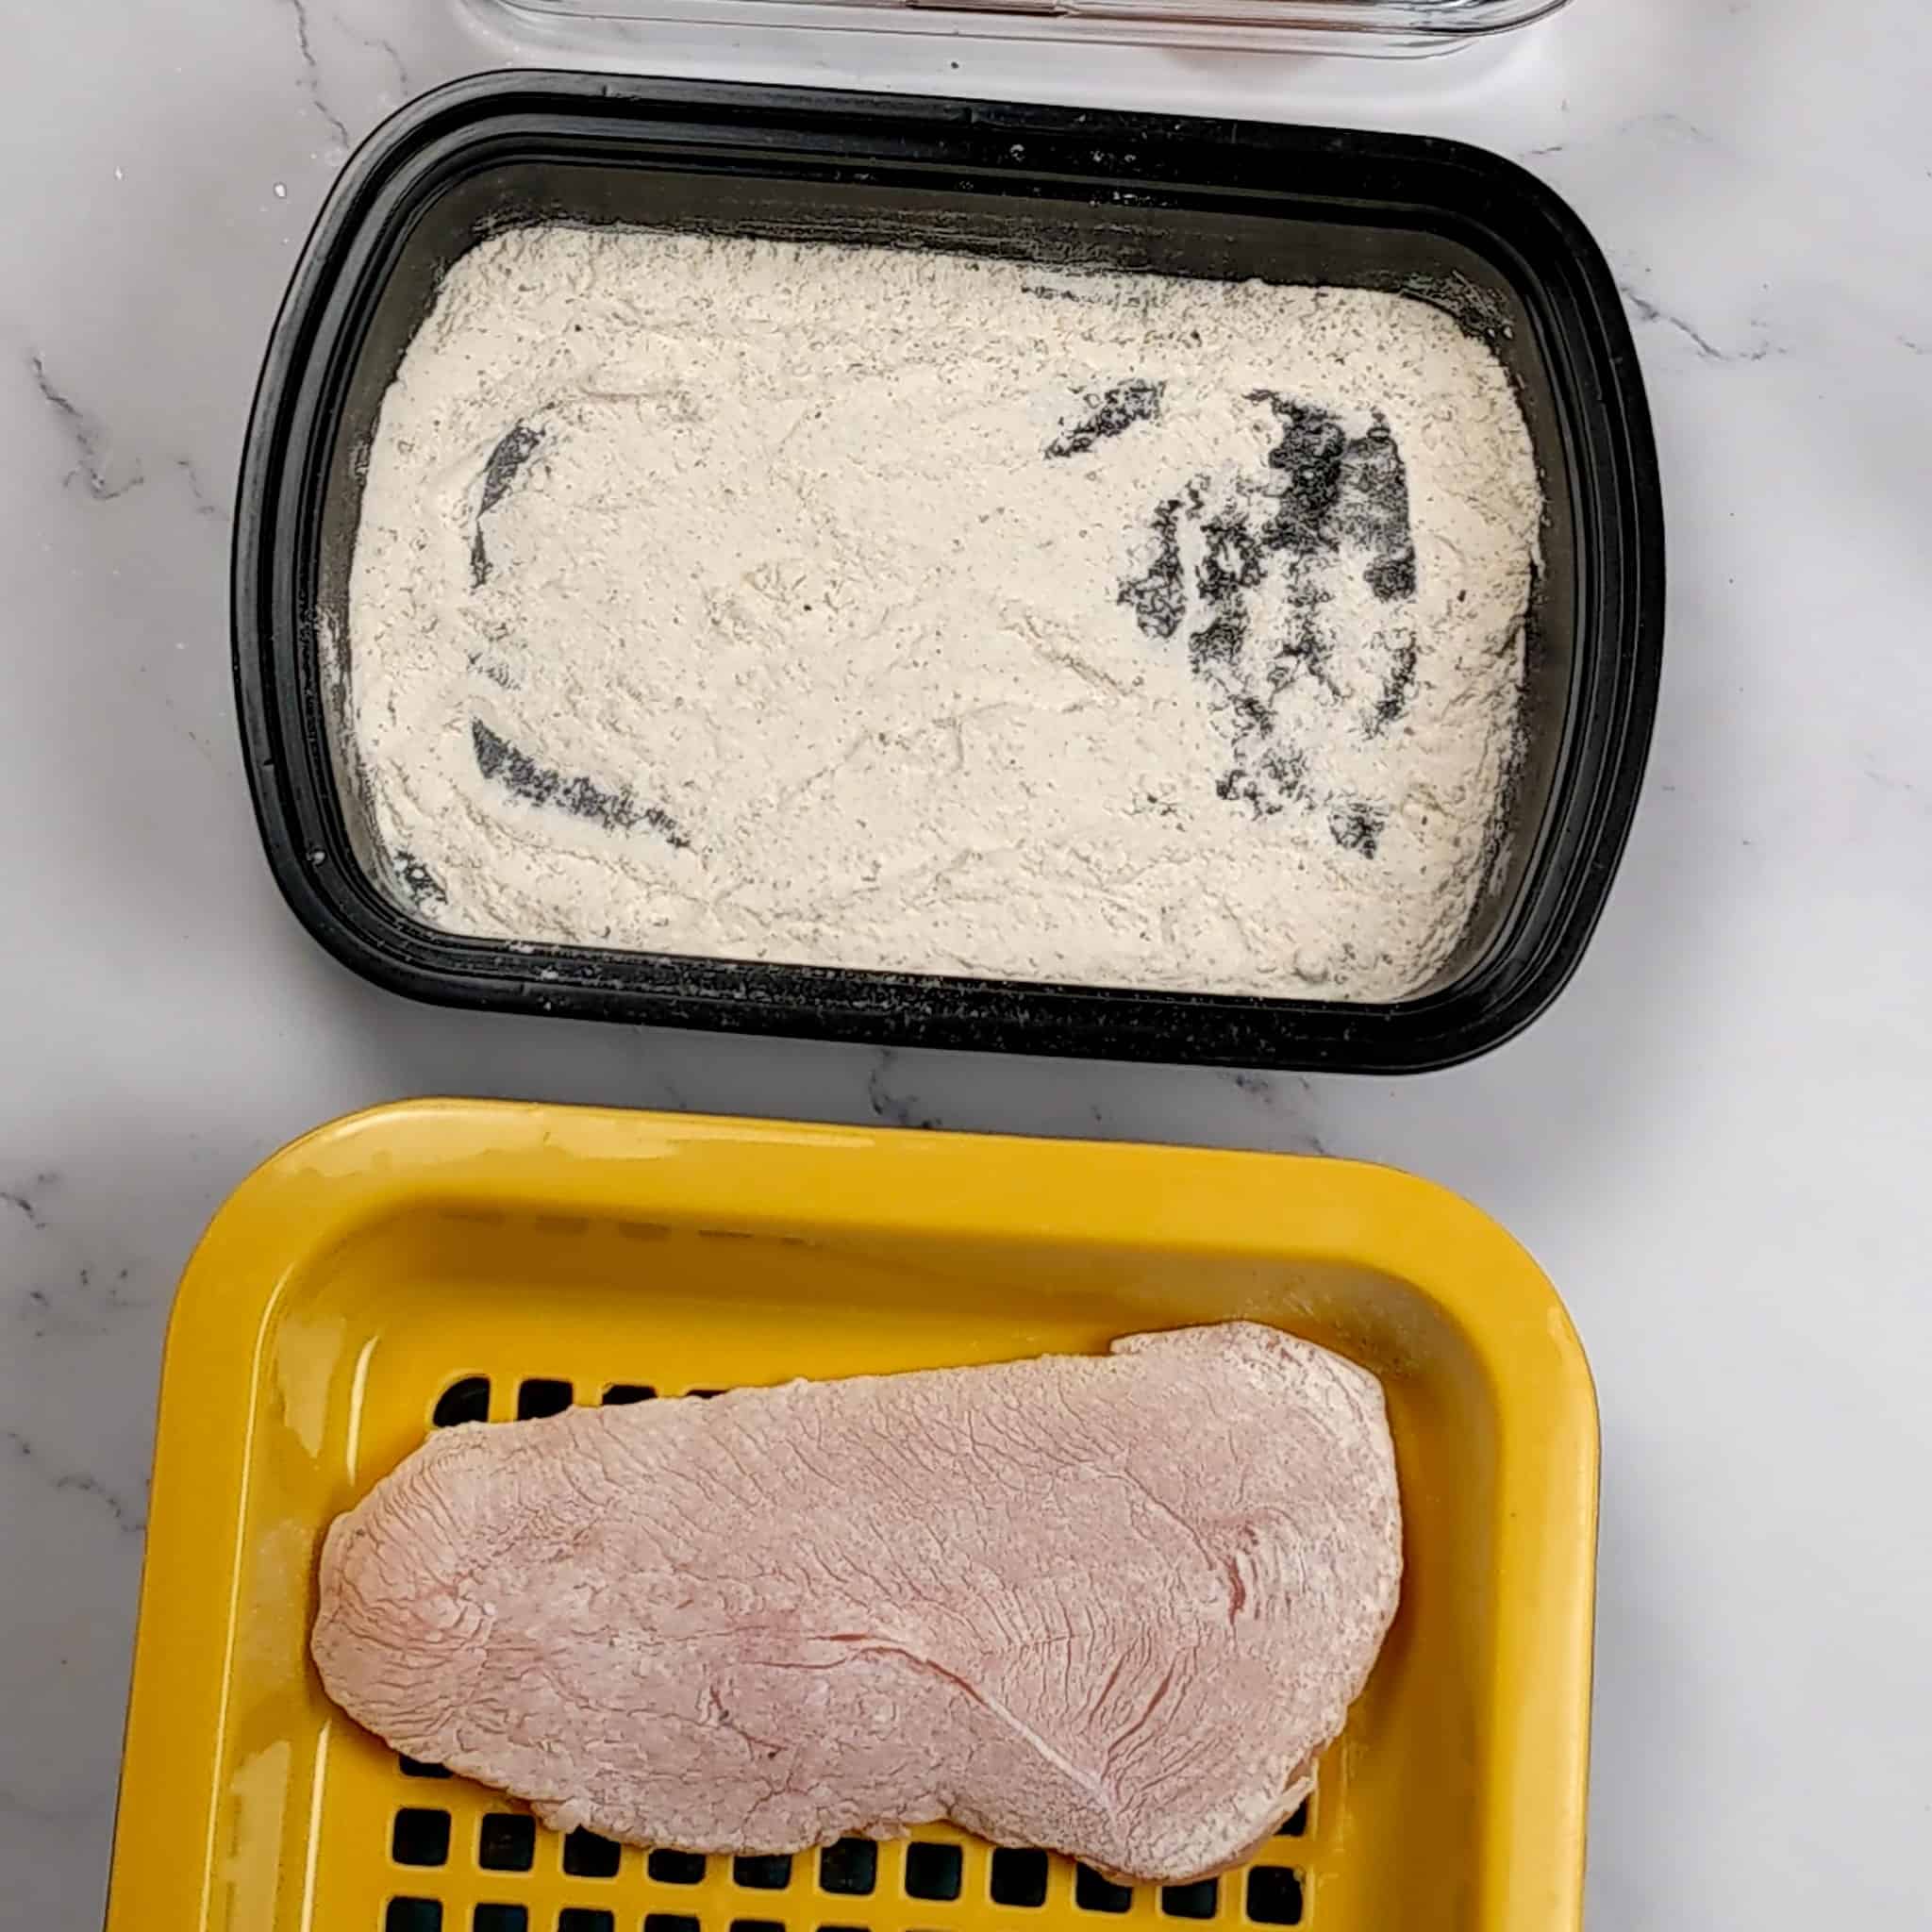 butterflied chicken breast dredge in seasoned flour resting on a plastic meat resting tray